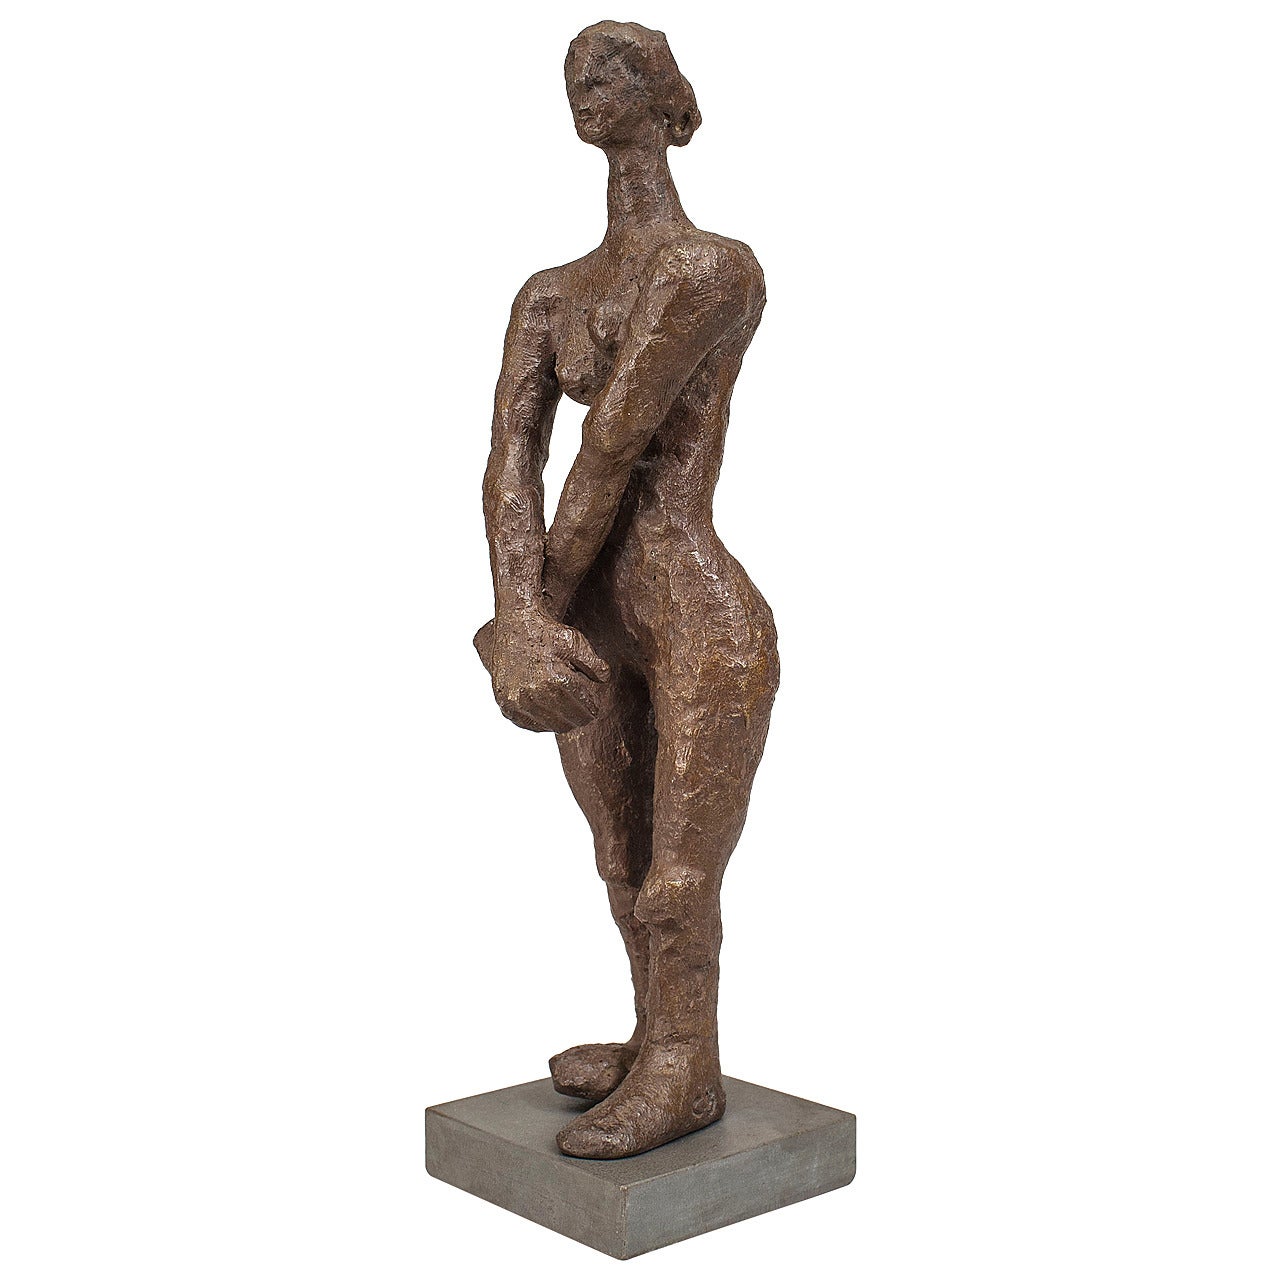 Contemporary American "No Woman" Sculpture by Carol Bruns, 2000